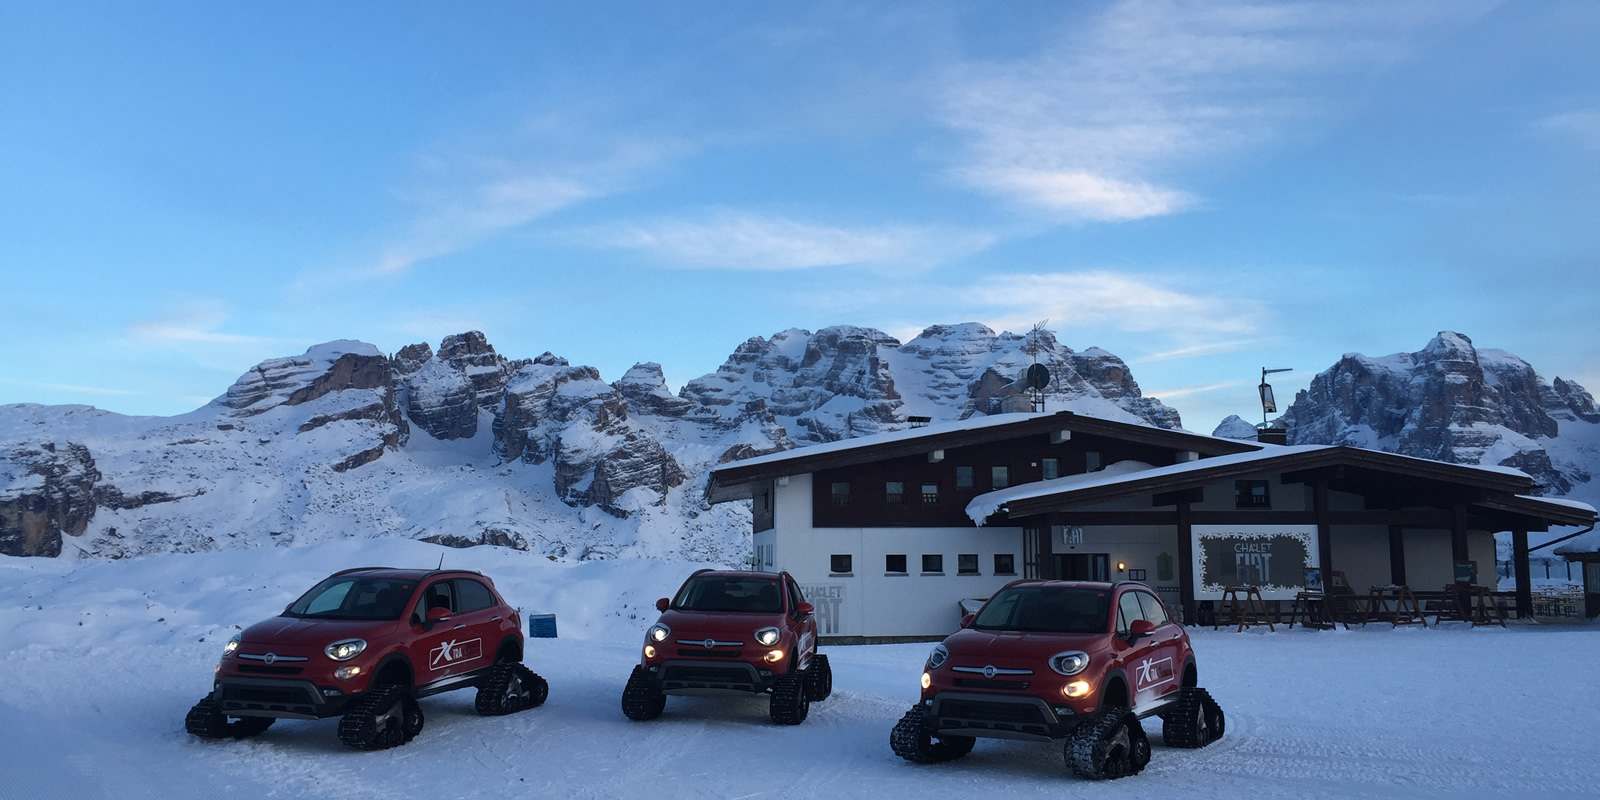 Chalet Fiat - Madonna di Campiglio - Pinzolo (TN) - Trentino